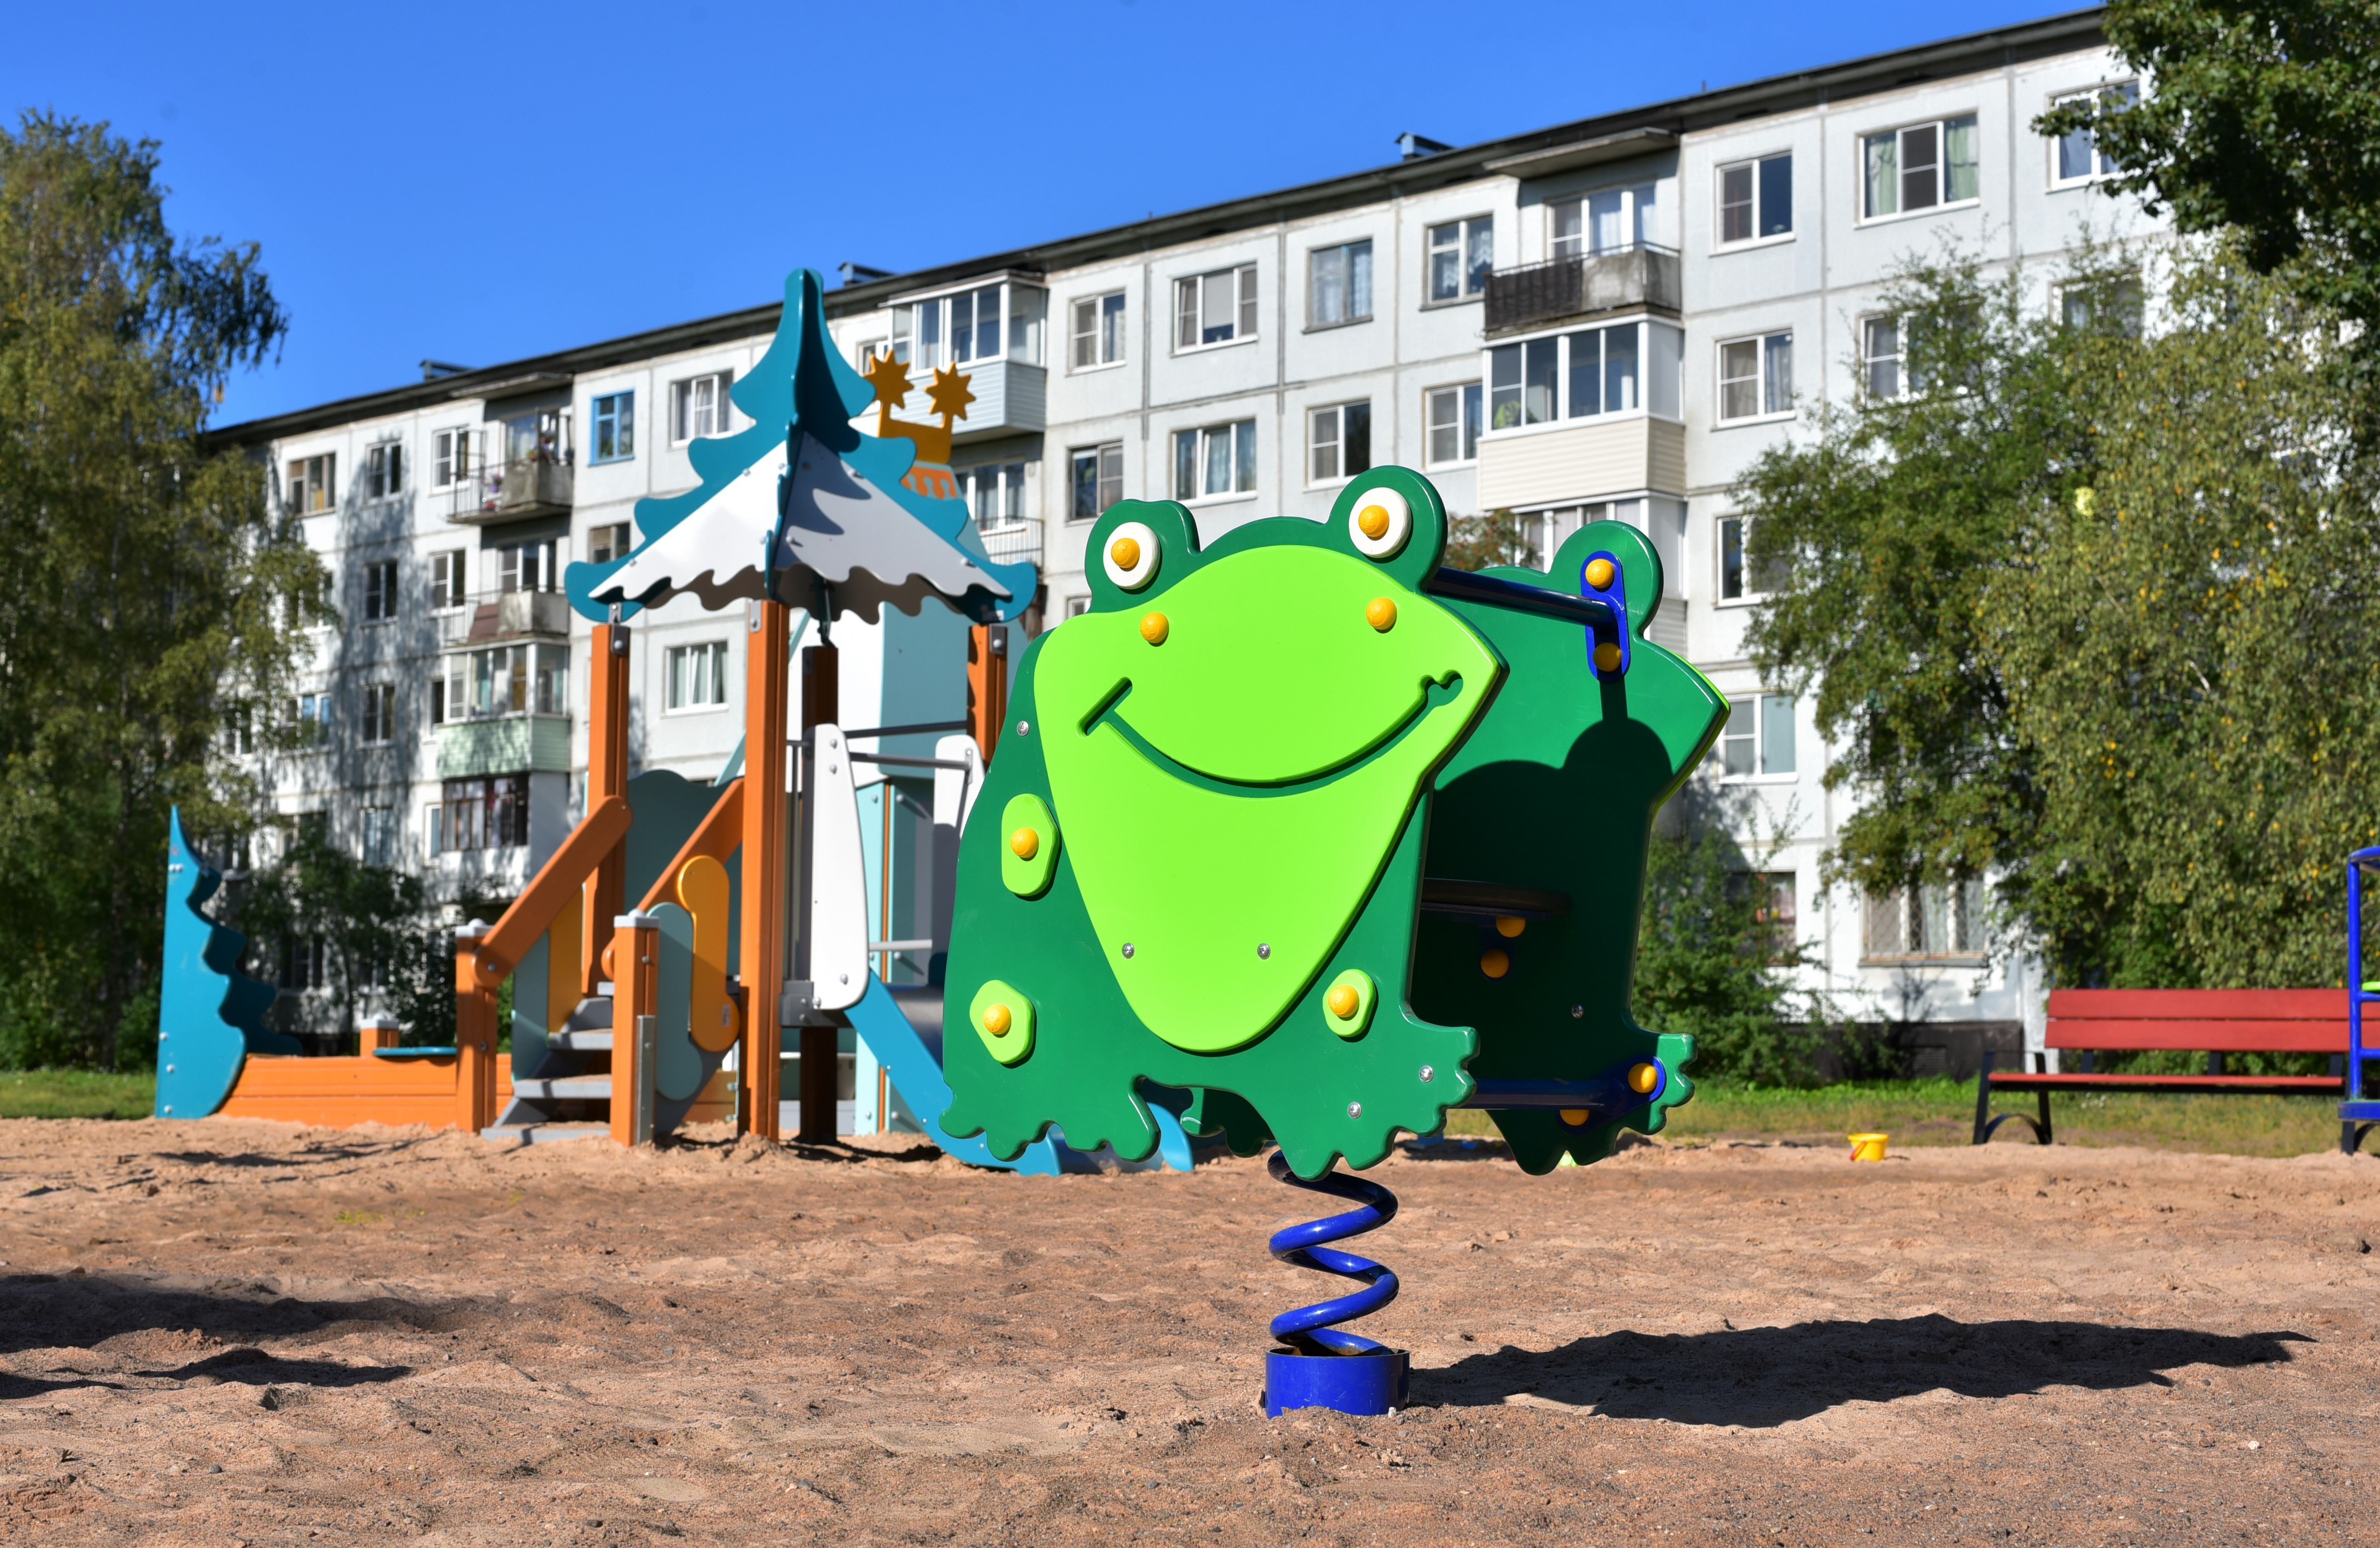 Глава города проконтролировал благоустройство детской площадки на Октябрьской улице.